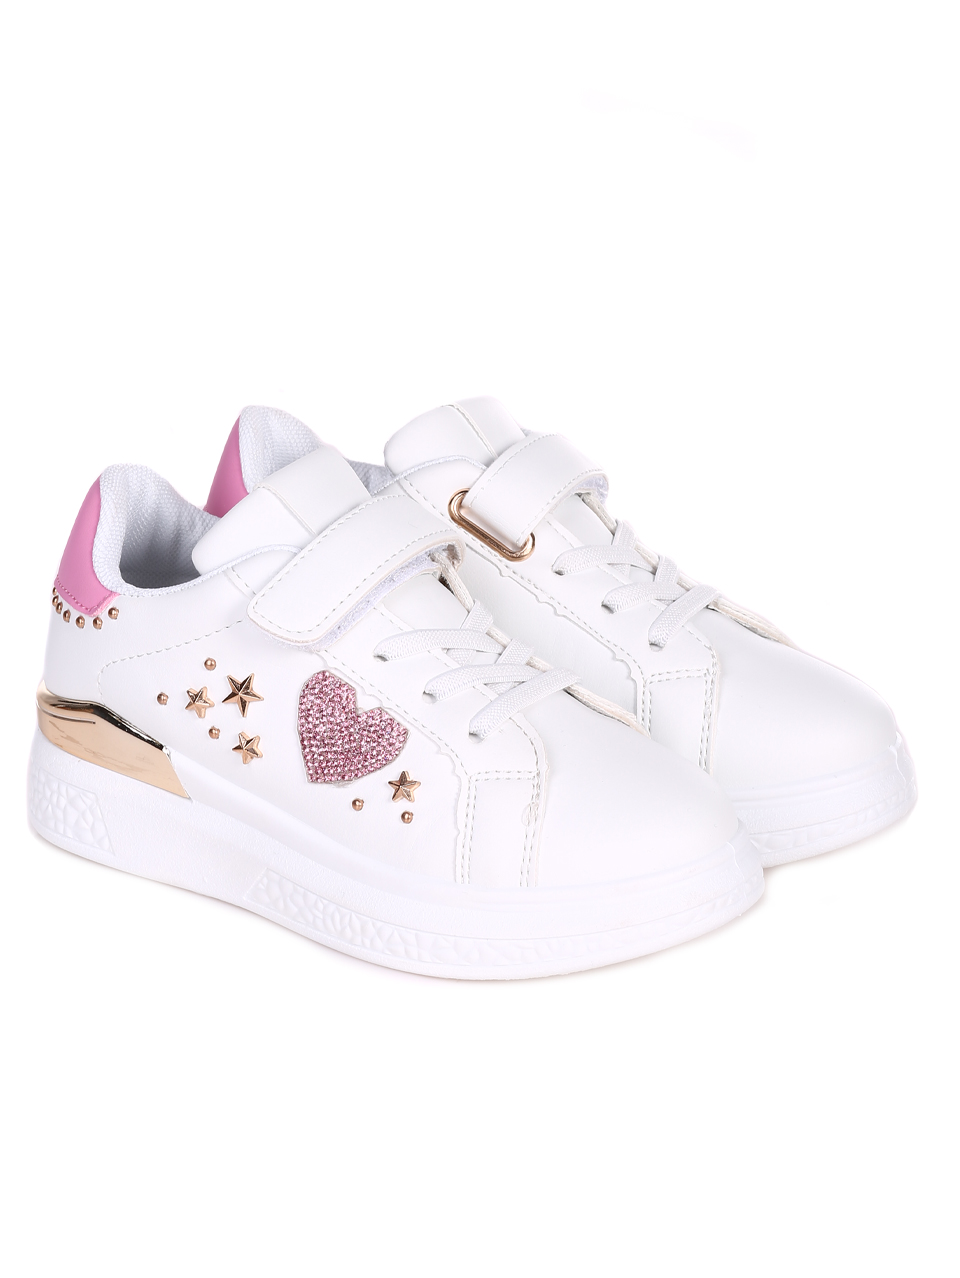 Комфортни детски обувки в бяло и розово 18U-23050 white/pink